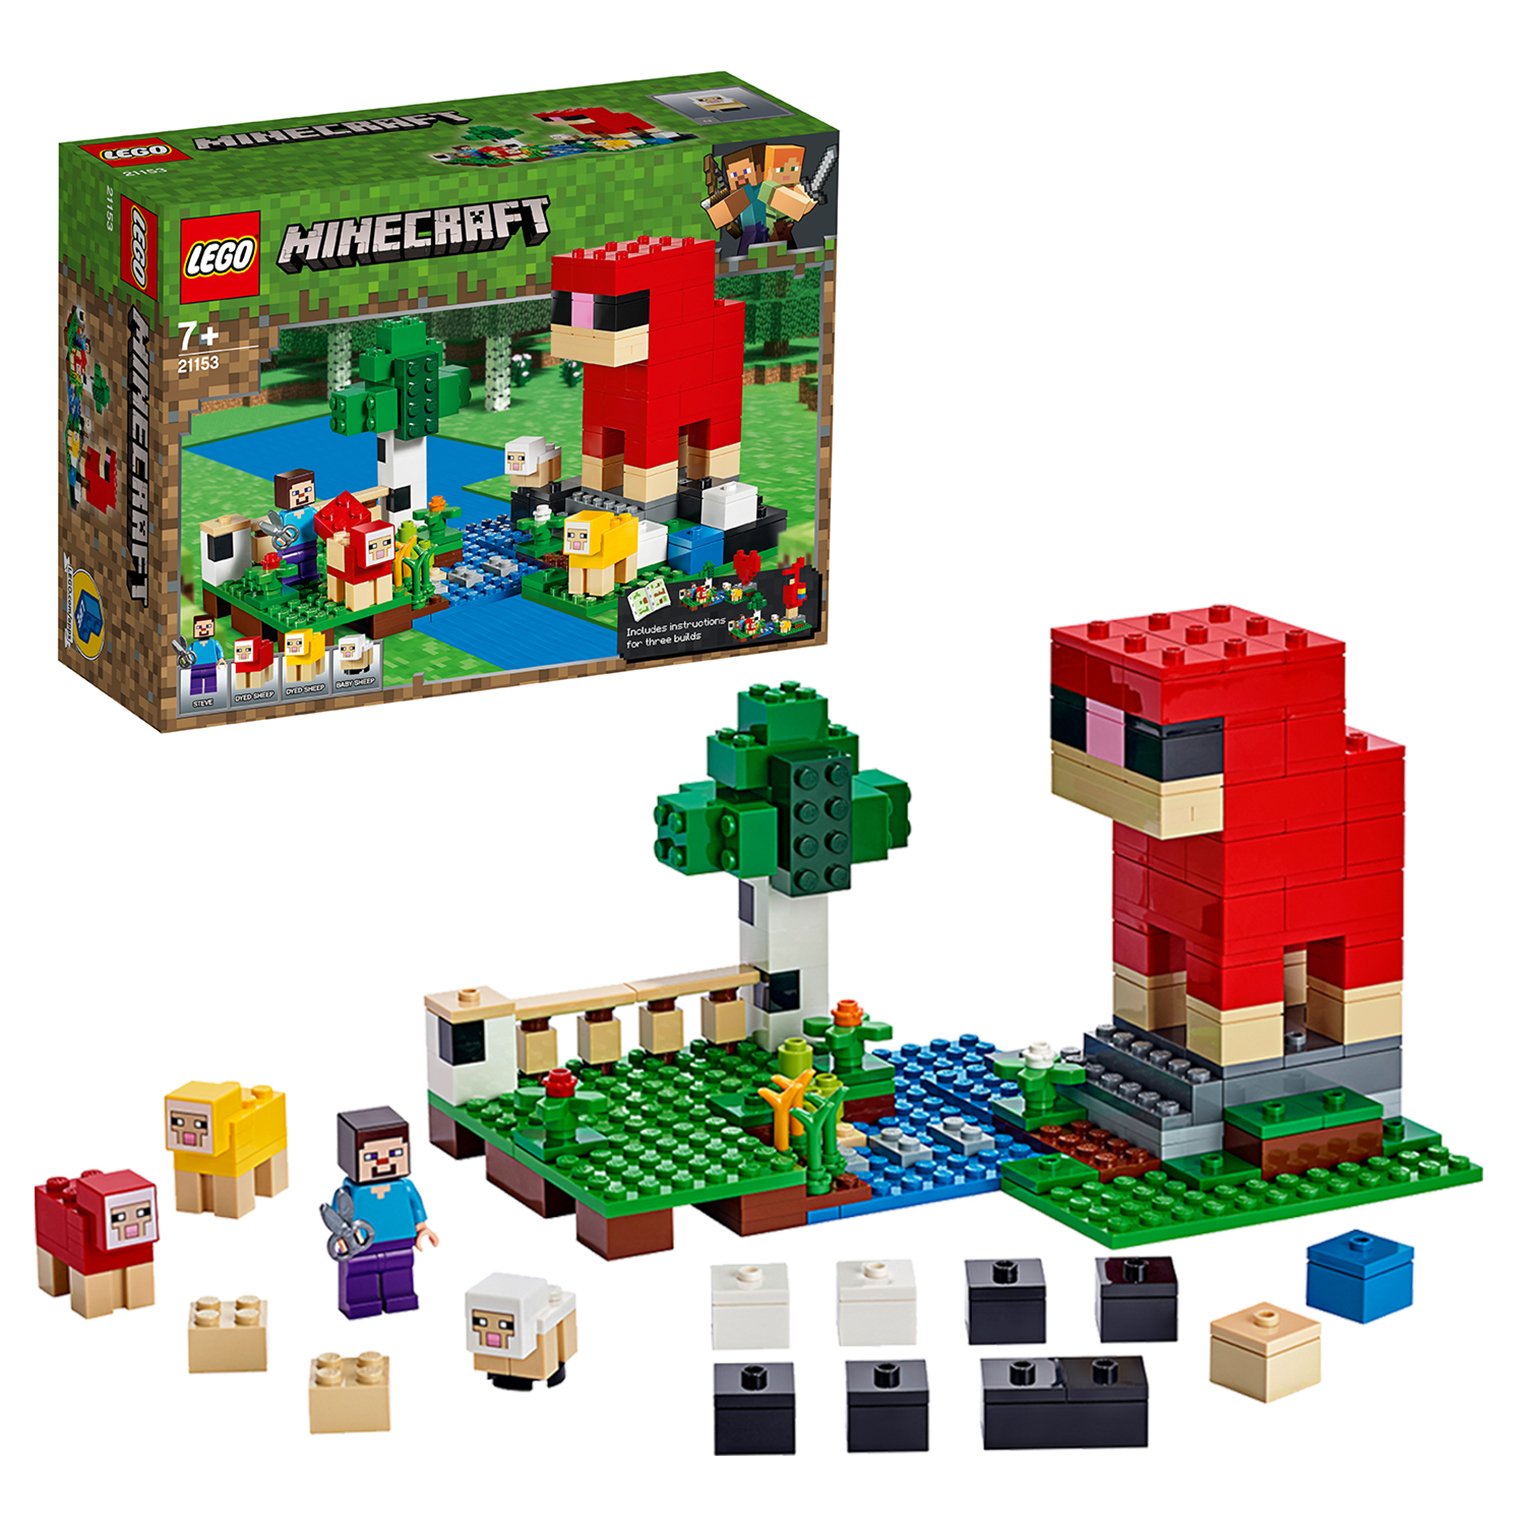 LEGO Minecraft The Wool Farm Playset - 21153